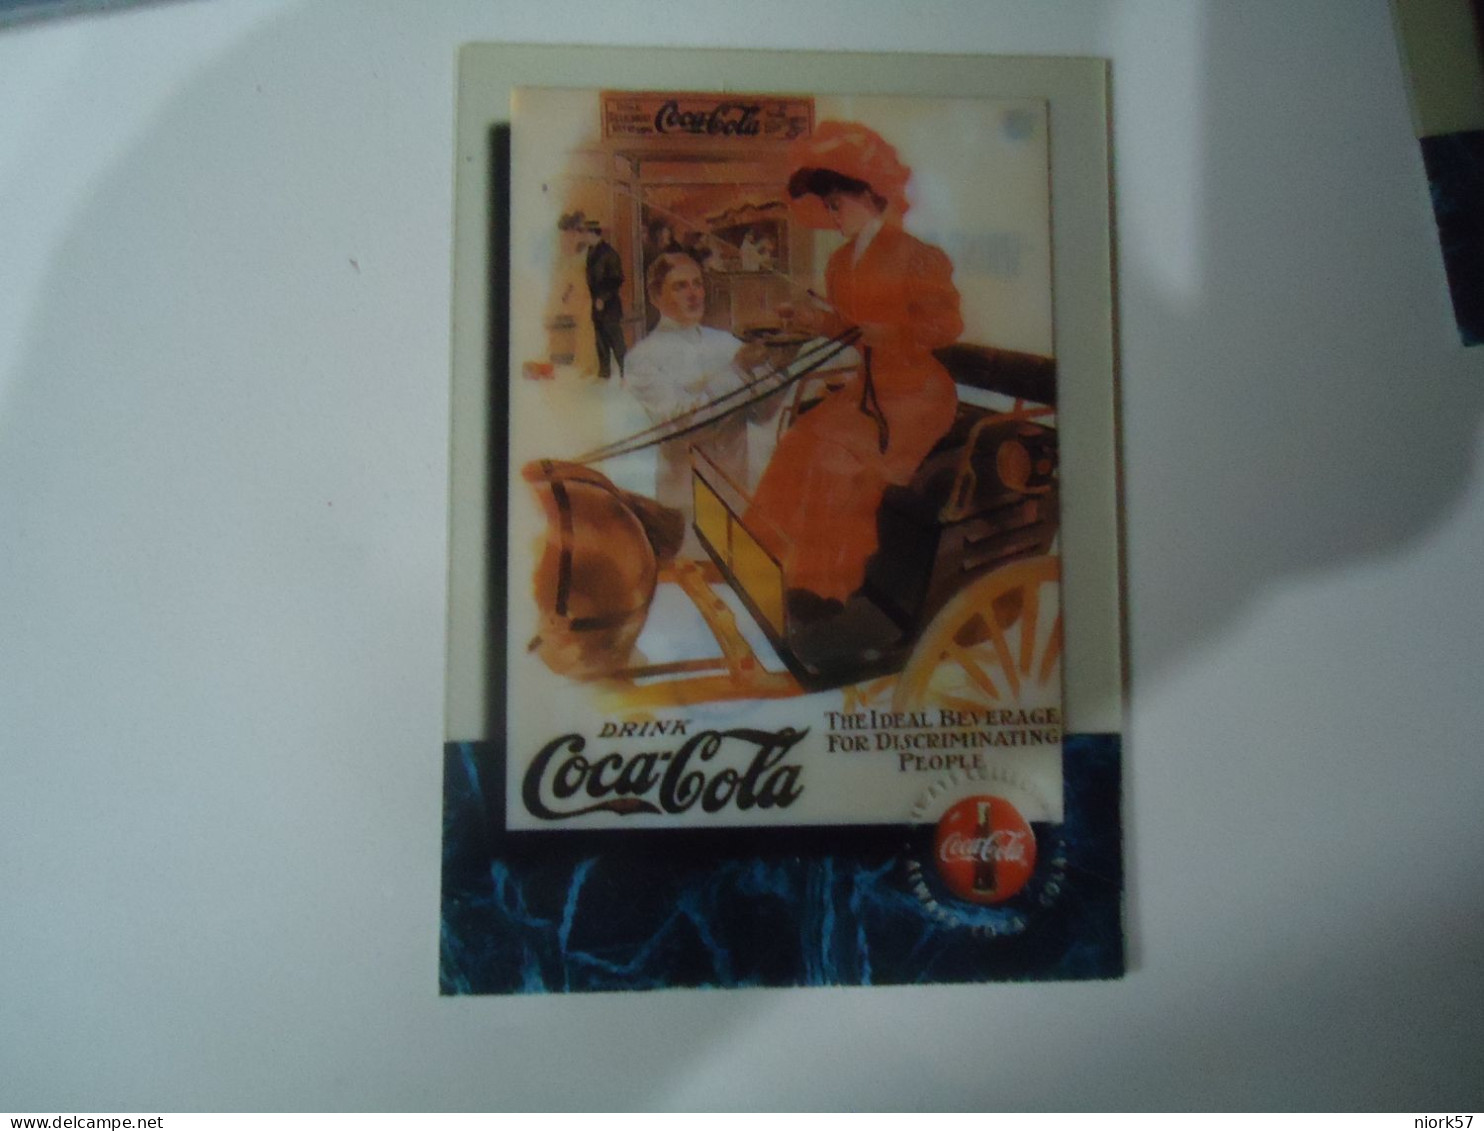 COCA COLA PREPAIND CARDS - Publicidad